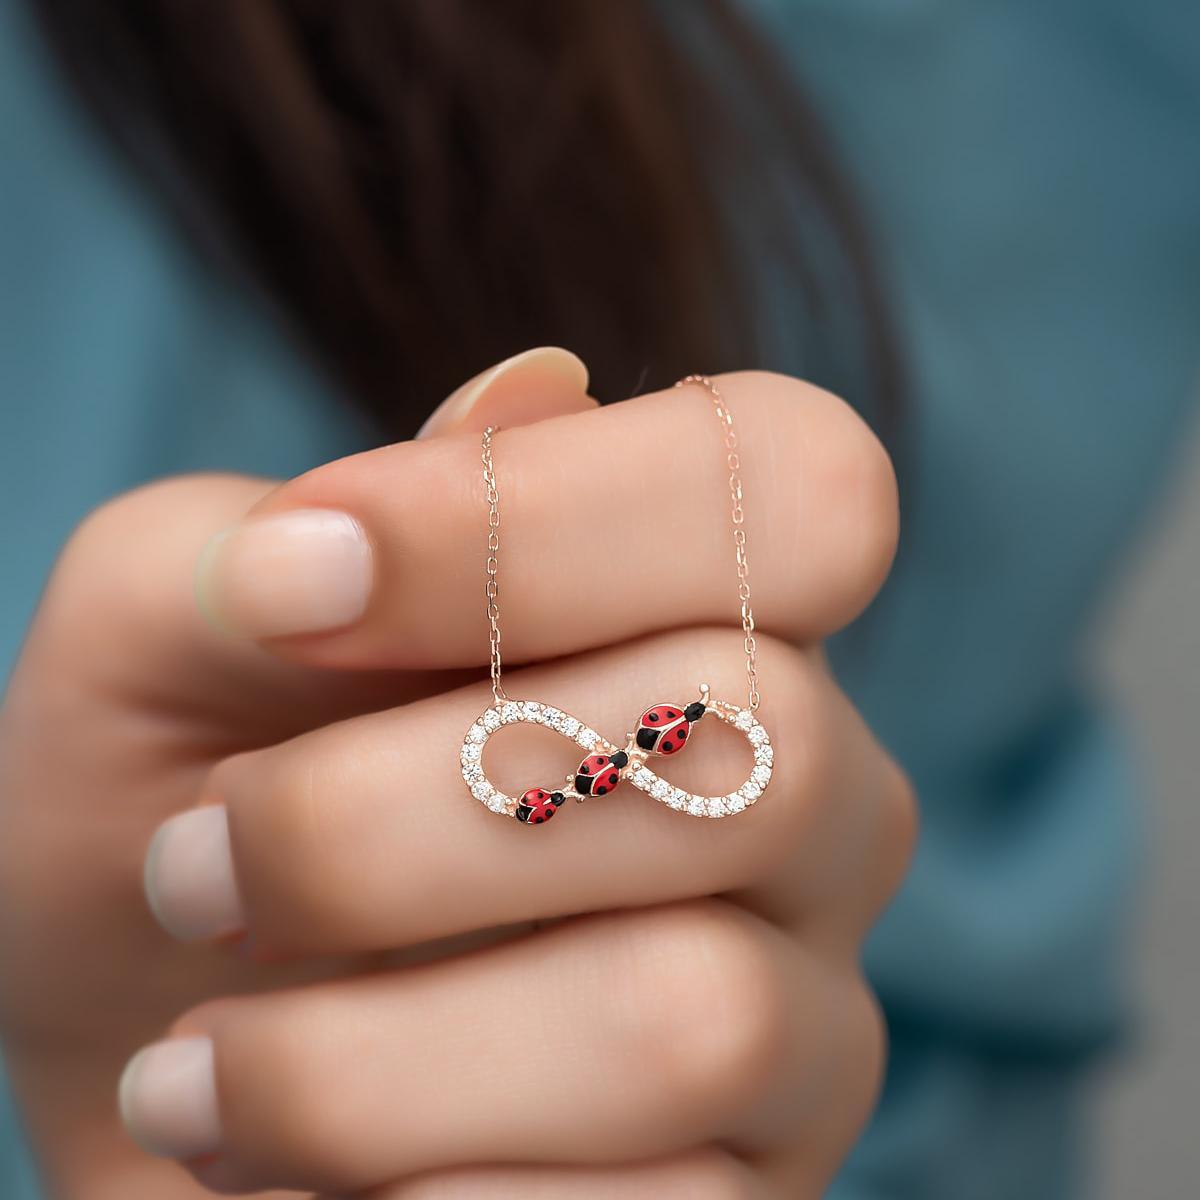 Diamond Infinity Ladybug Necklace • Ladybug Diamond Infinity Necklace - Trending Silver Gifts